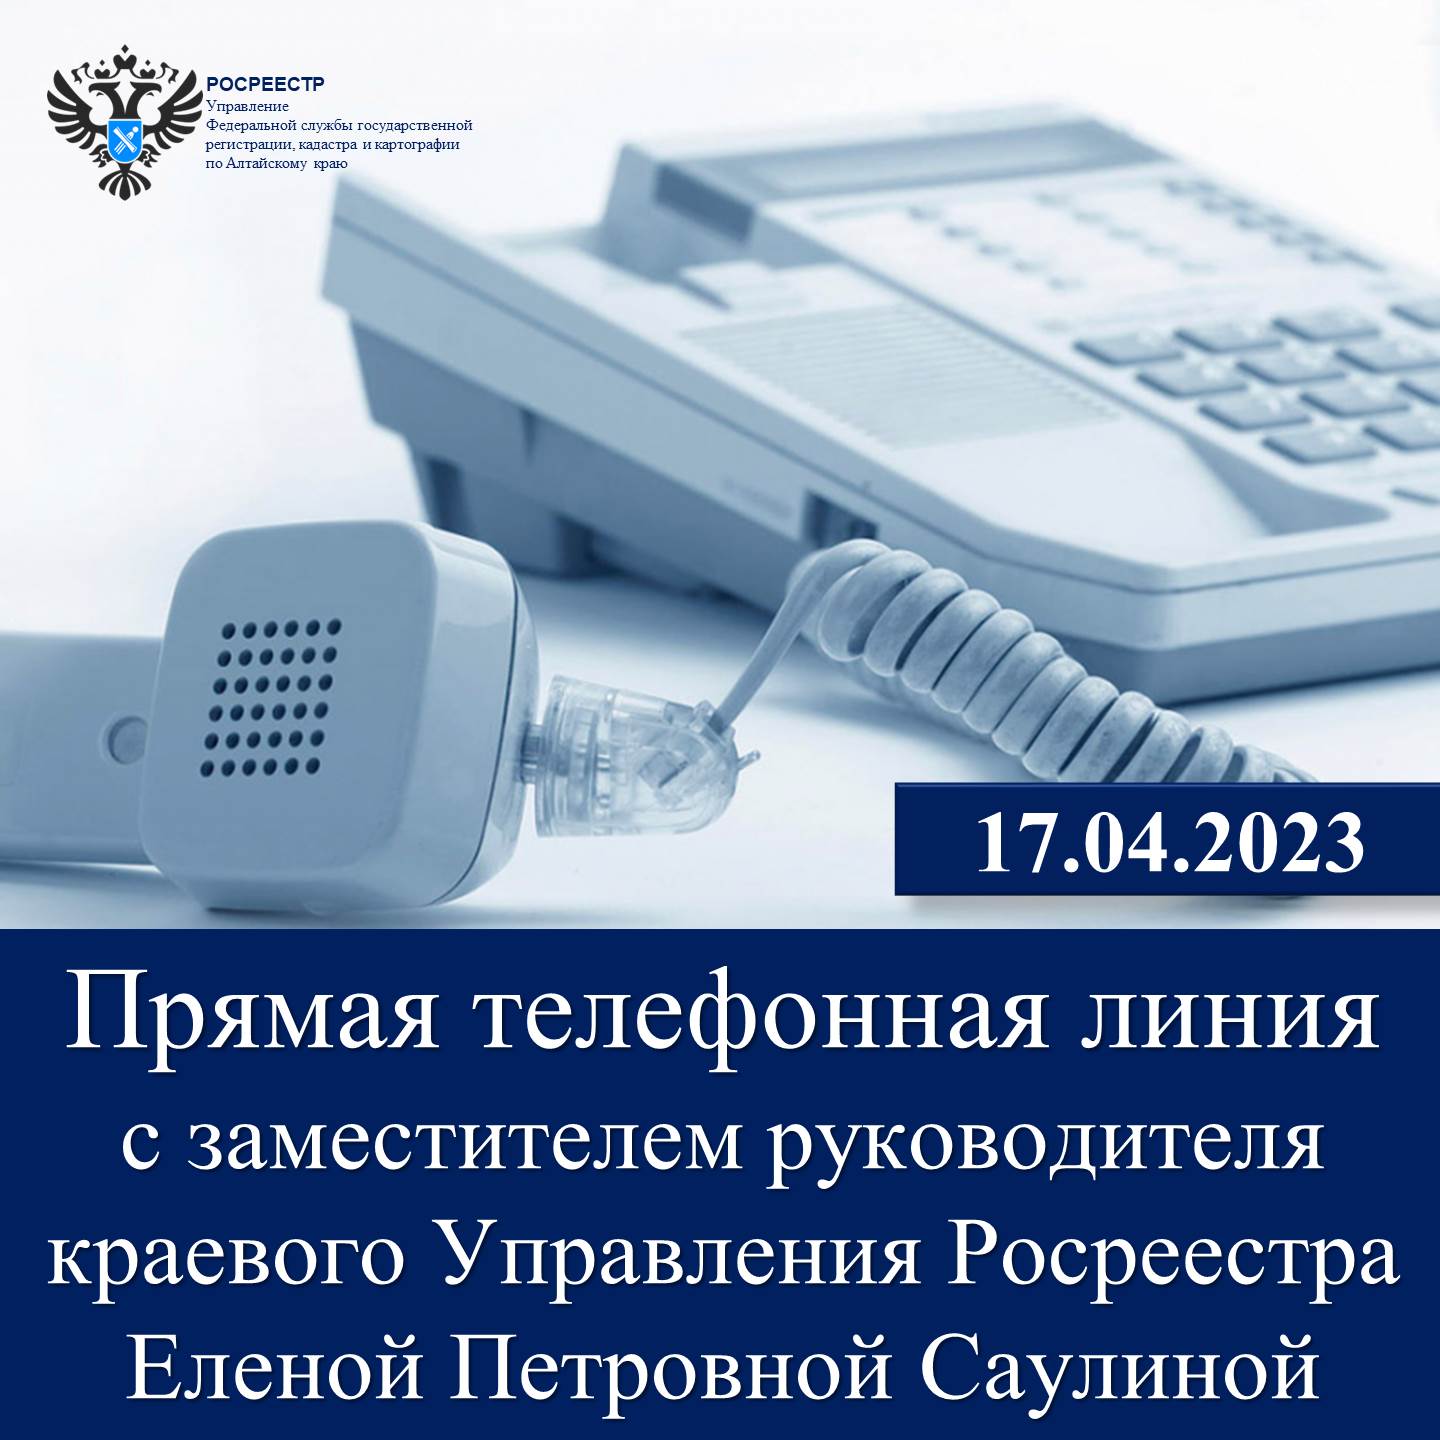 17 апреля состоится «Прямая телефонная линия» с заместителем руководителя краевого Управления Росреестра  Еленой Петровной Саулиной